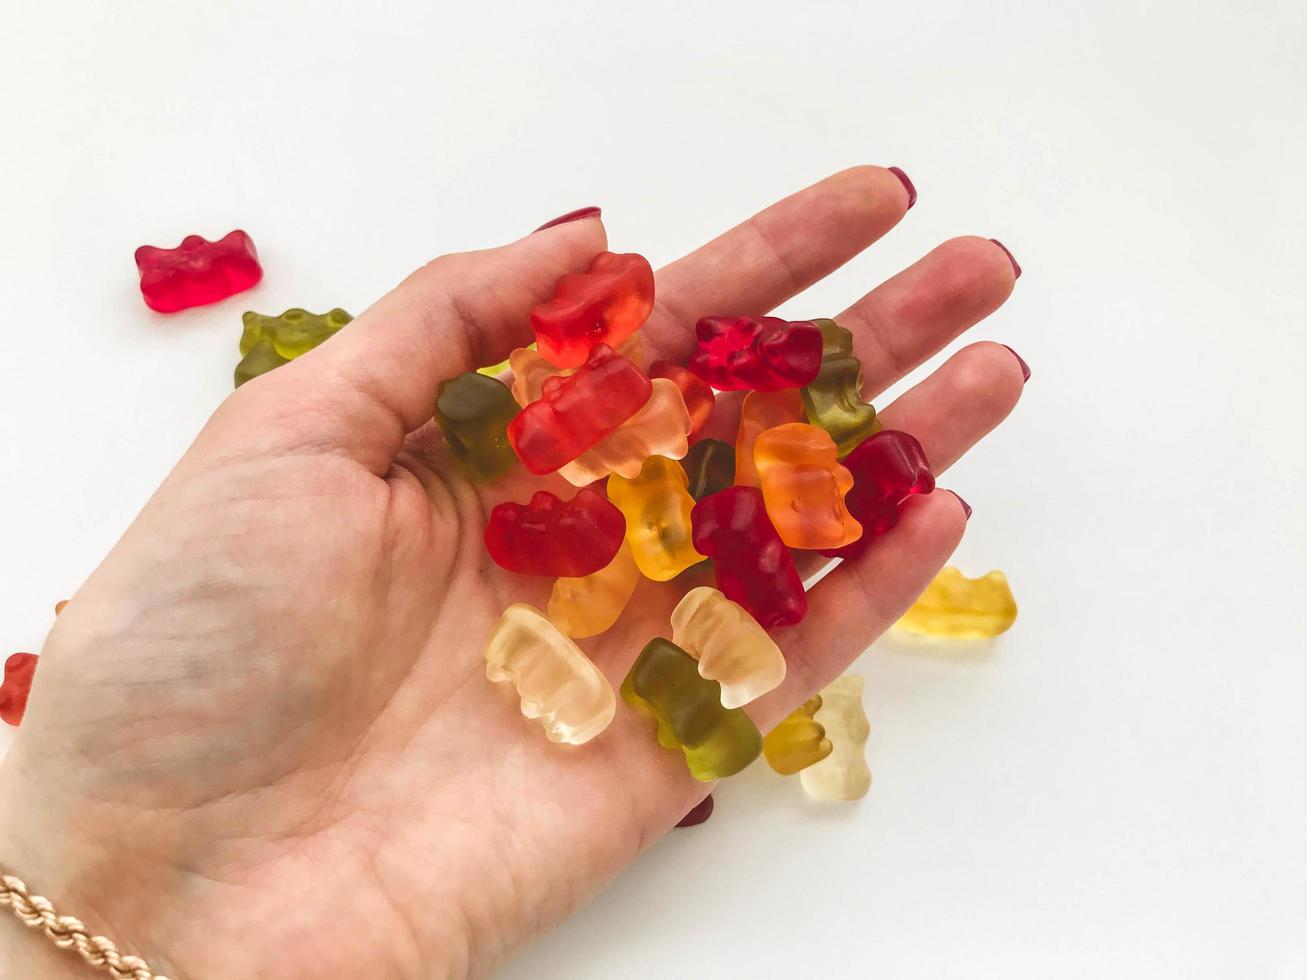 kleverig veelkleurig bears liggen Aan een hand- met een goud armband. gekleurde bears gemaakt van gelatine, calorierijk nagerecht. behandelt voor kinderen en volwassenen. smakelijk snoep foto